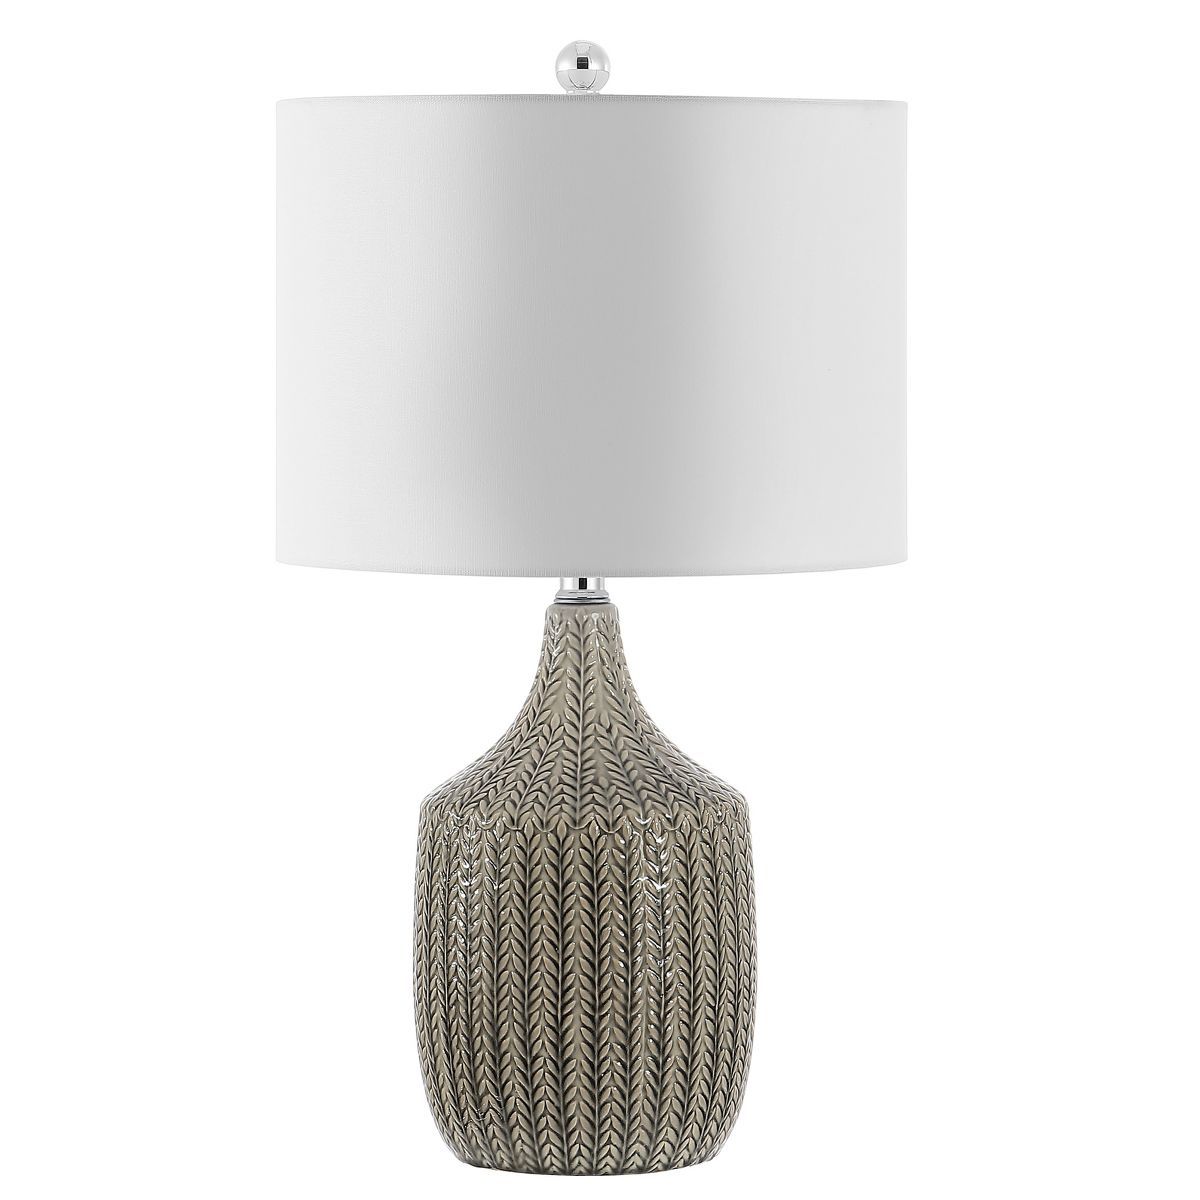 Secia Table Lamp - Grey - Safavieh | Target